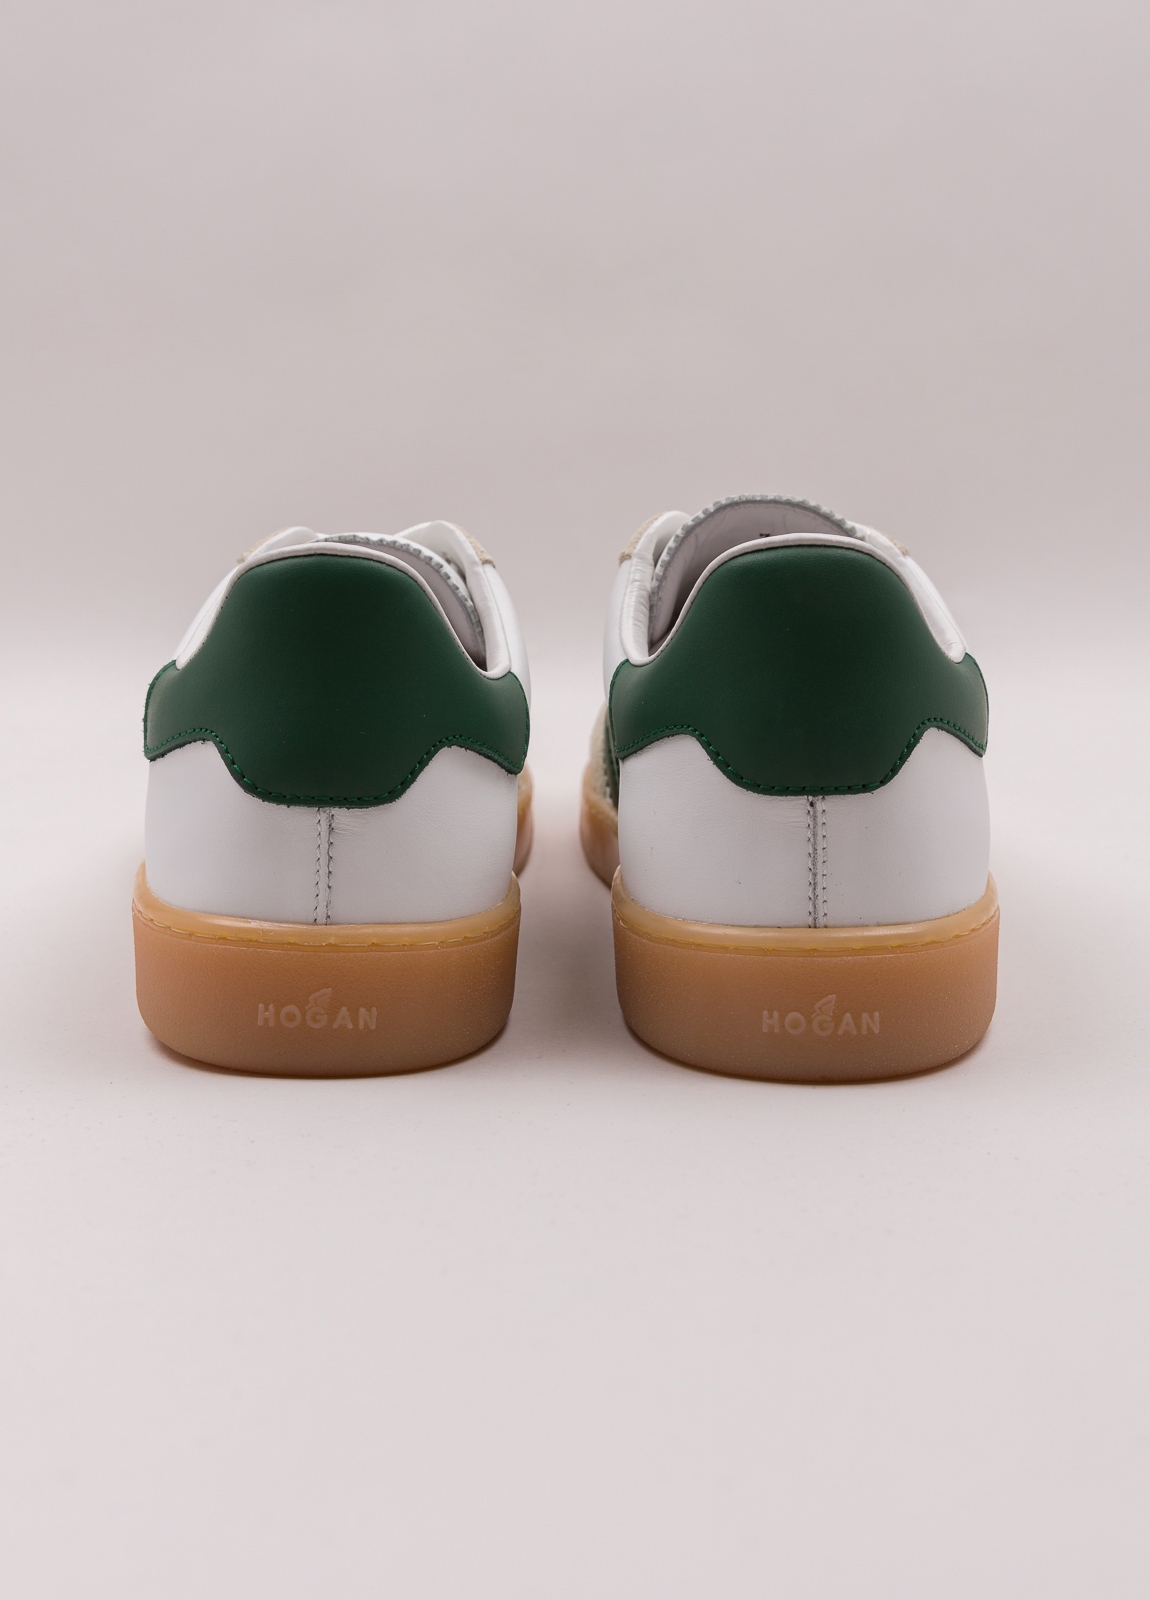 Zapatillas deportivas HOGAN color blanco, beige y verde - Ítem2